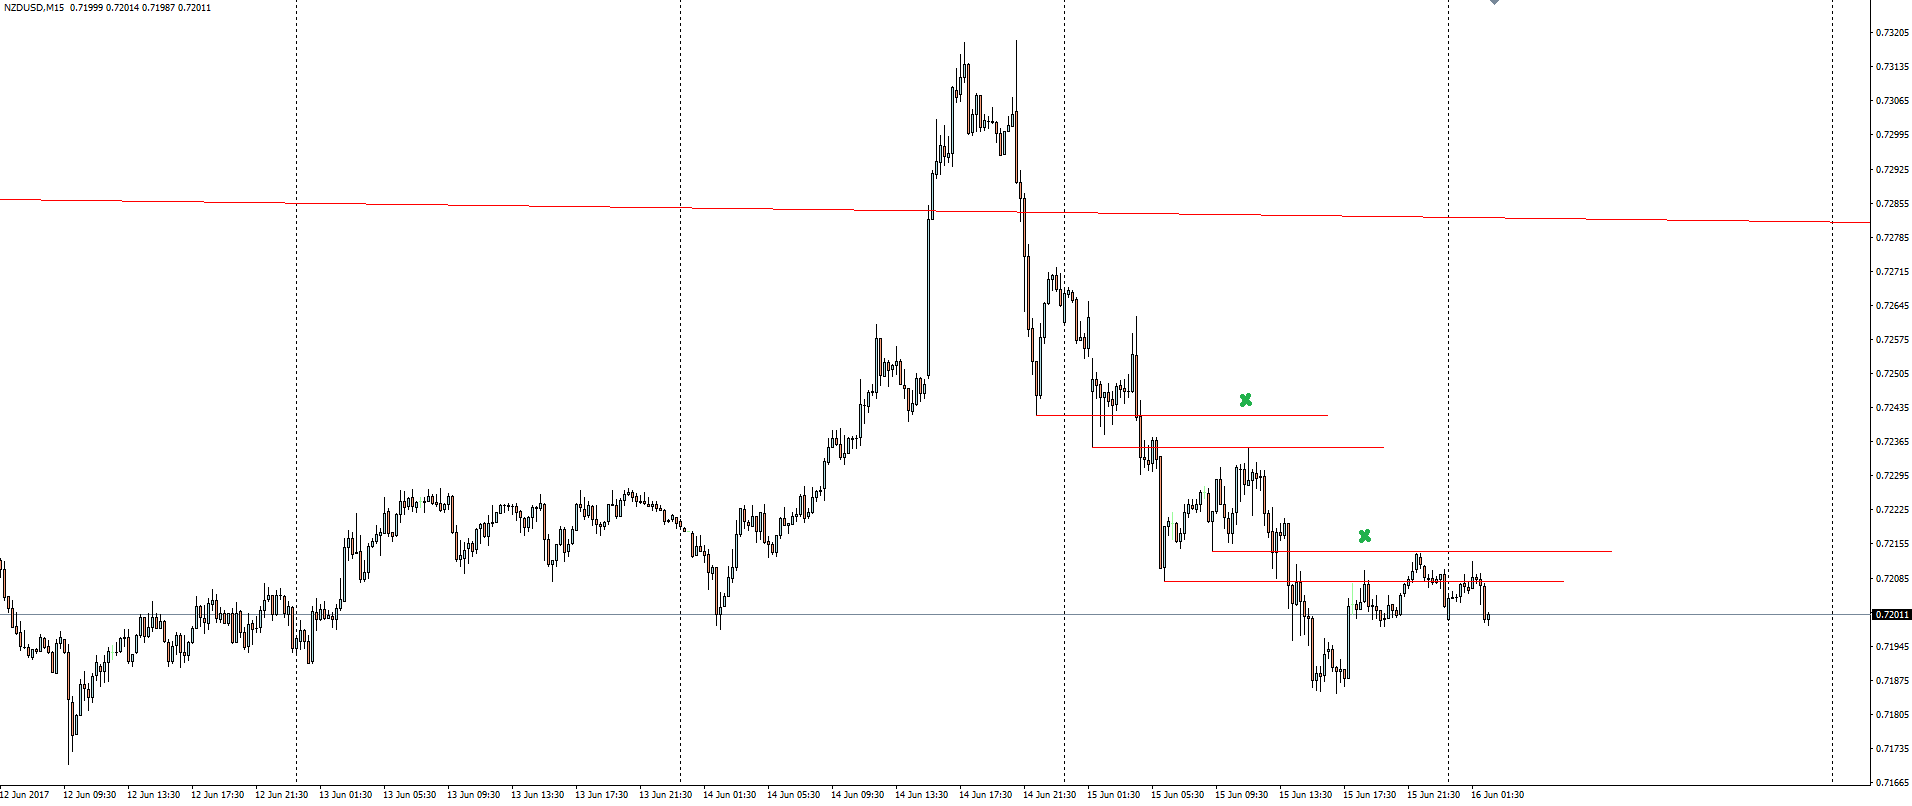 NZD/USD 15 Minute Chart